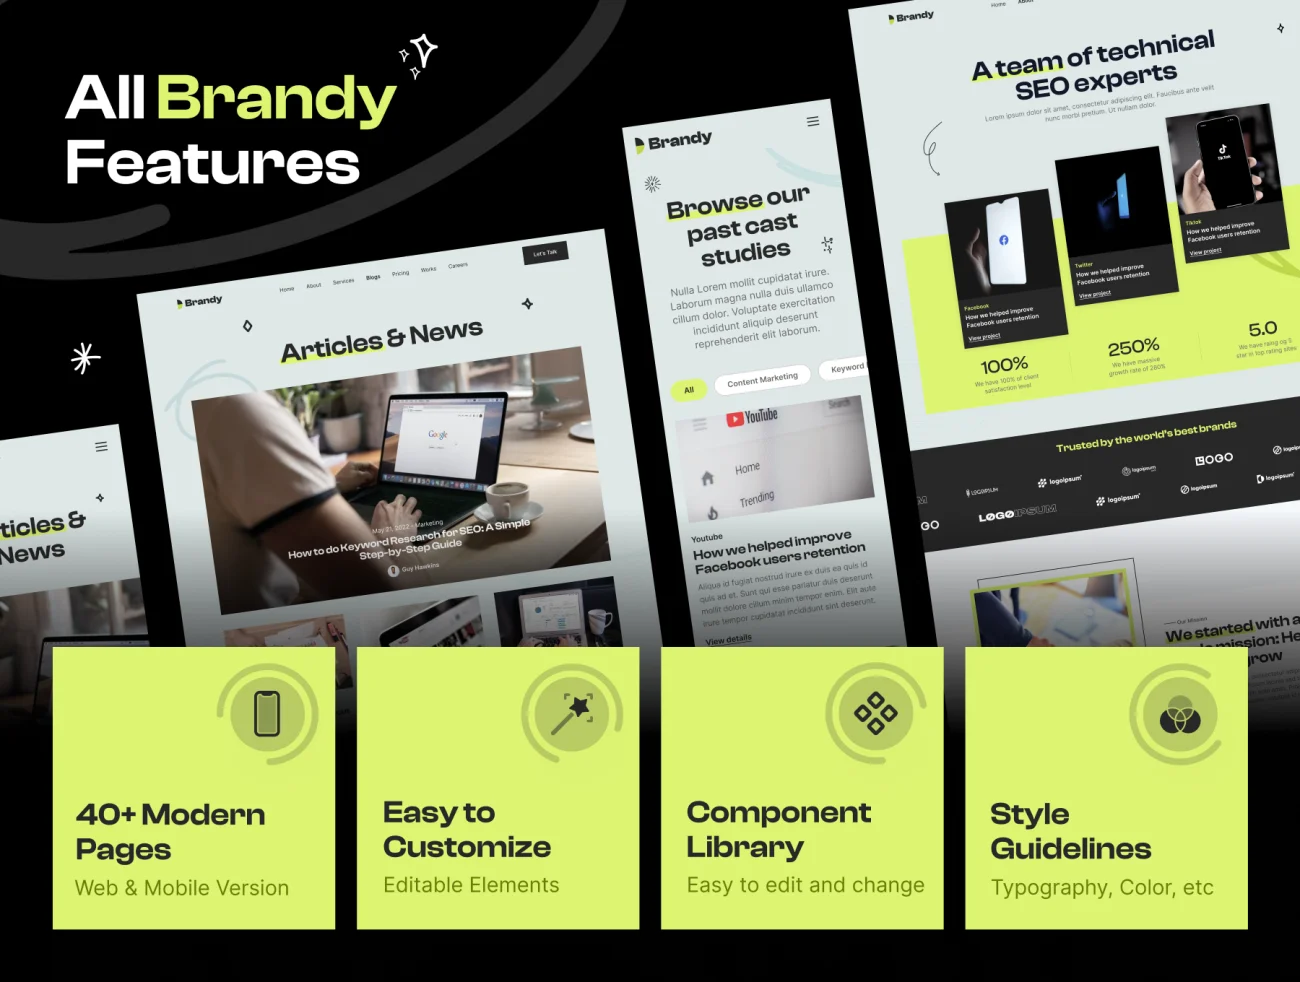 数字营销新媒体公司机构网站UI套件 Brandy - Digital Marketing Agency Website UI Kit .figma-UI/UX、ui套件、主页、介绍、博客、海报-到位啦UI